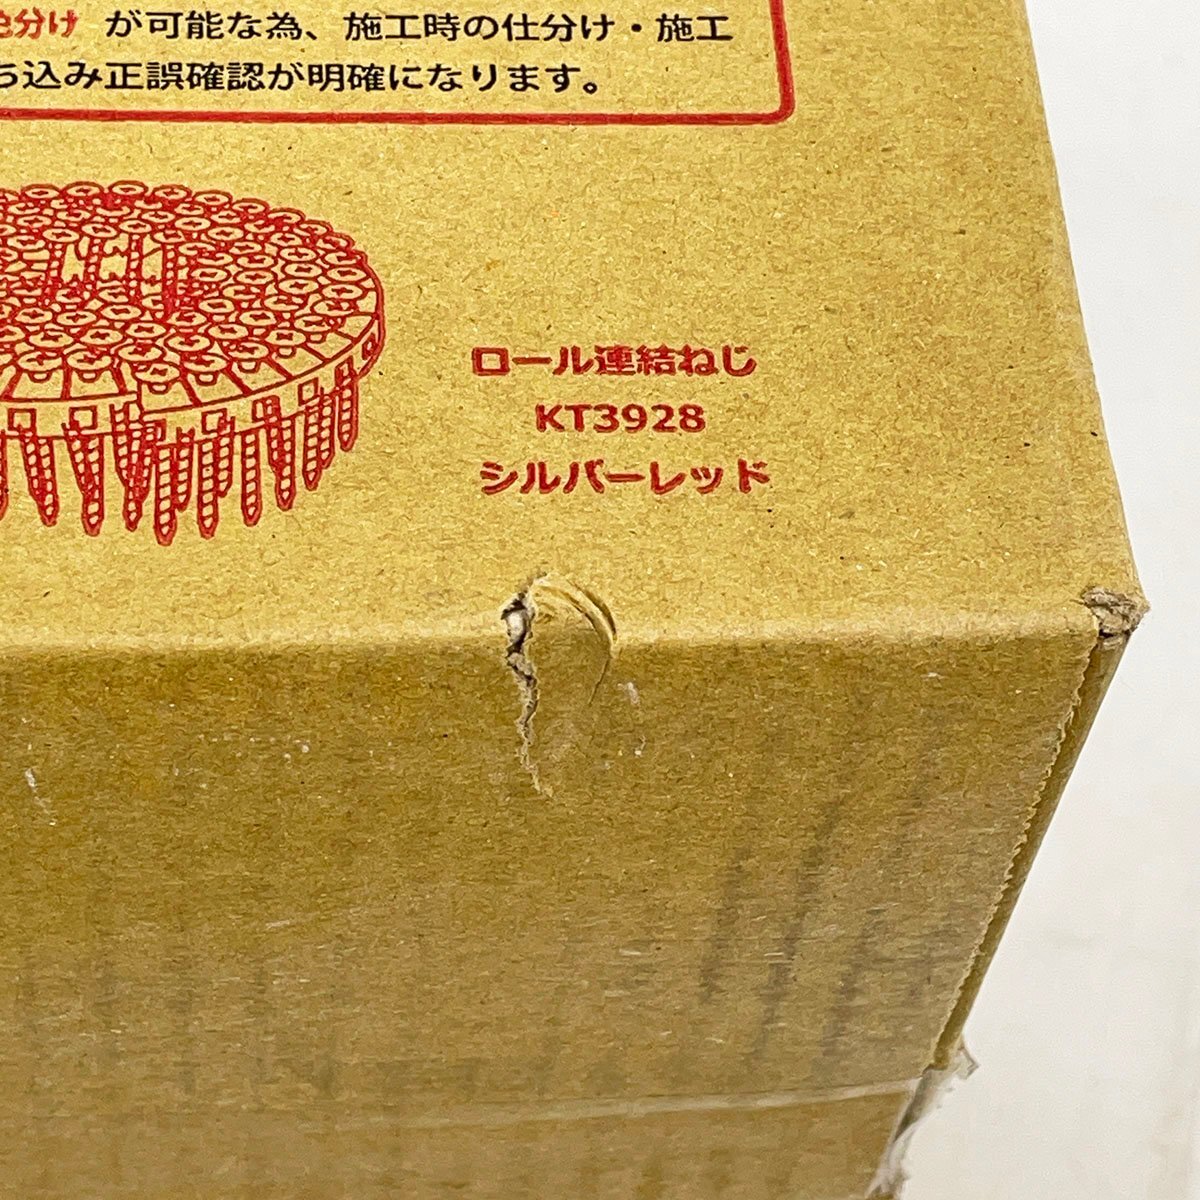 未開封品 KANAI カナイ ロール連結ねじ KT3928 シルバーレッド 1箱2000本(100本×20巻) 合計6箱セット [F6525]の画像2